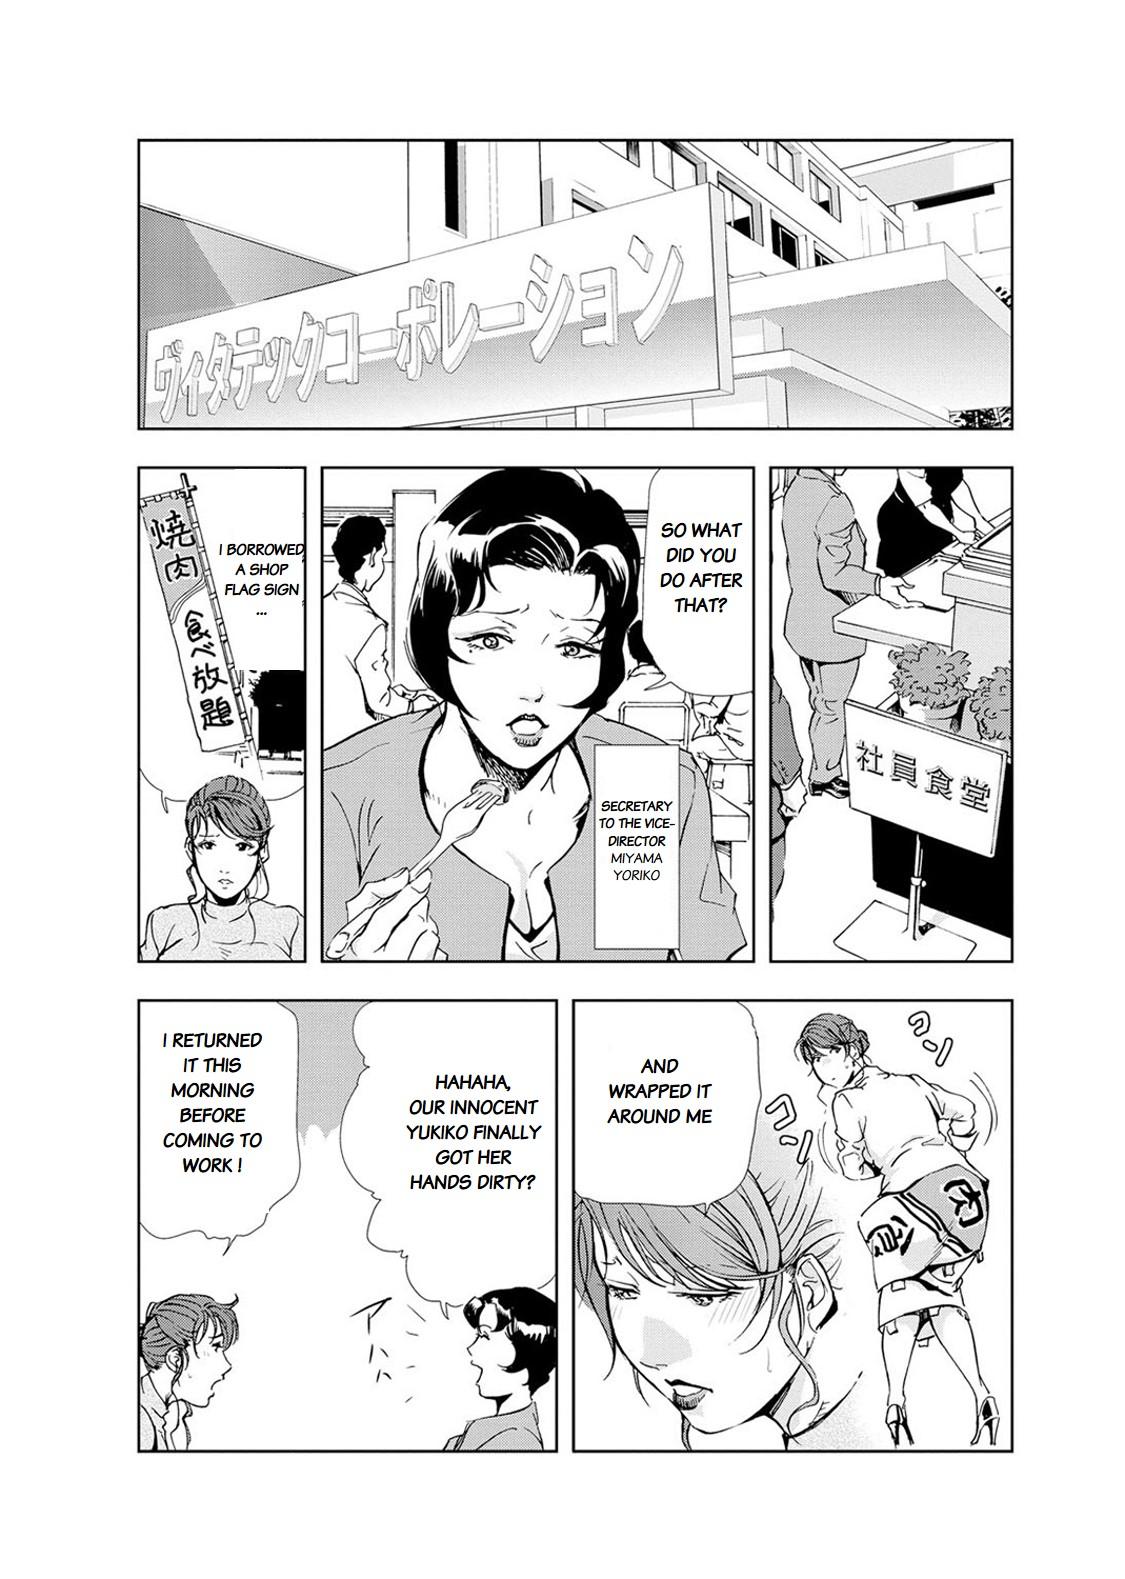 Nikuhisyo Yukiko chapter 20 7